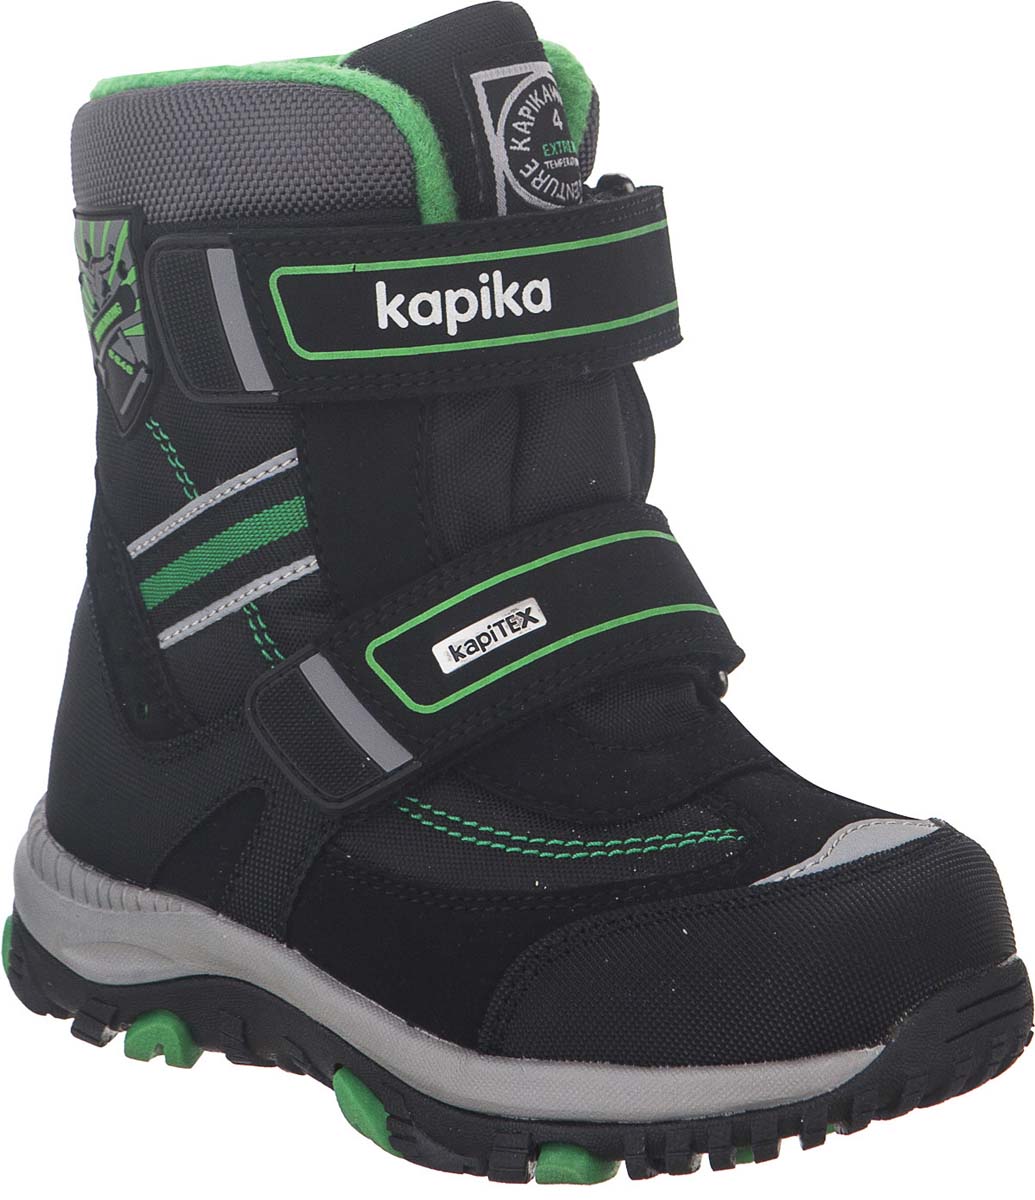 Ботинки для мальчика Kapika KapiTEX, цвет: черный, зеленый. 42204-1. Размер 31